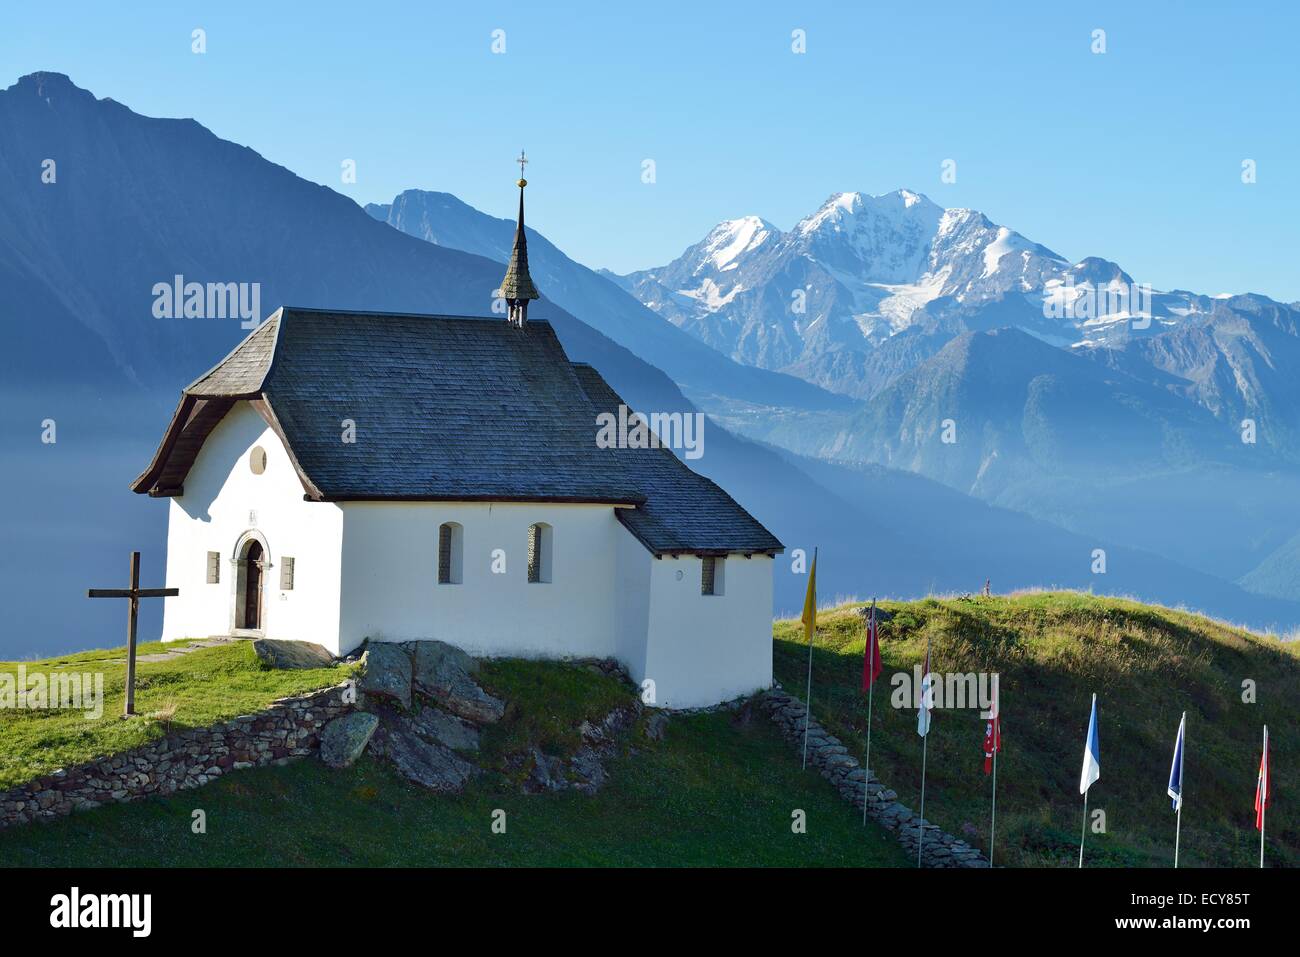 Vieille montagne, dans le village de Bettmeralp, Canton du Valais, Suisse Banque D'Images